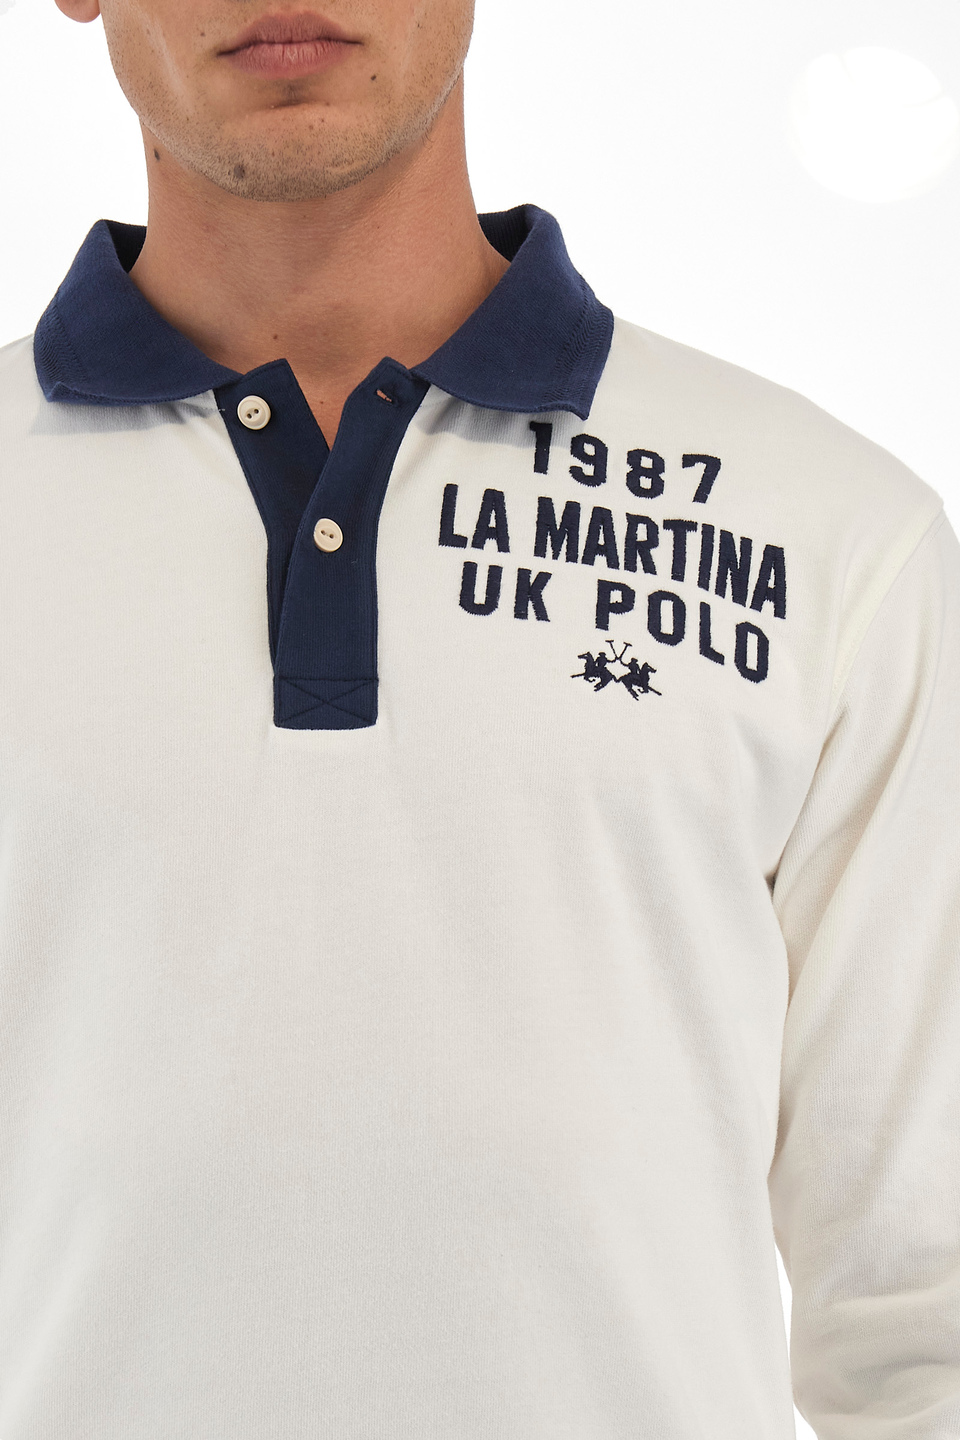 Herren-Poloshirt Comfort Fit - Wilbert | La Martina - Official Online Shop